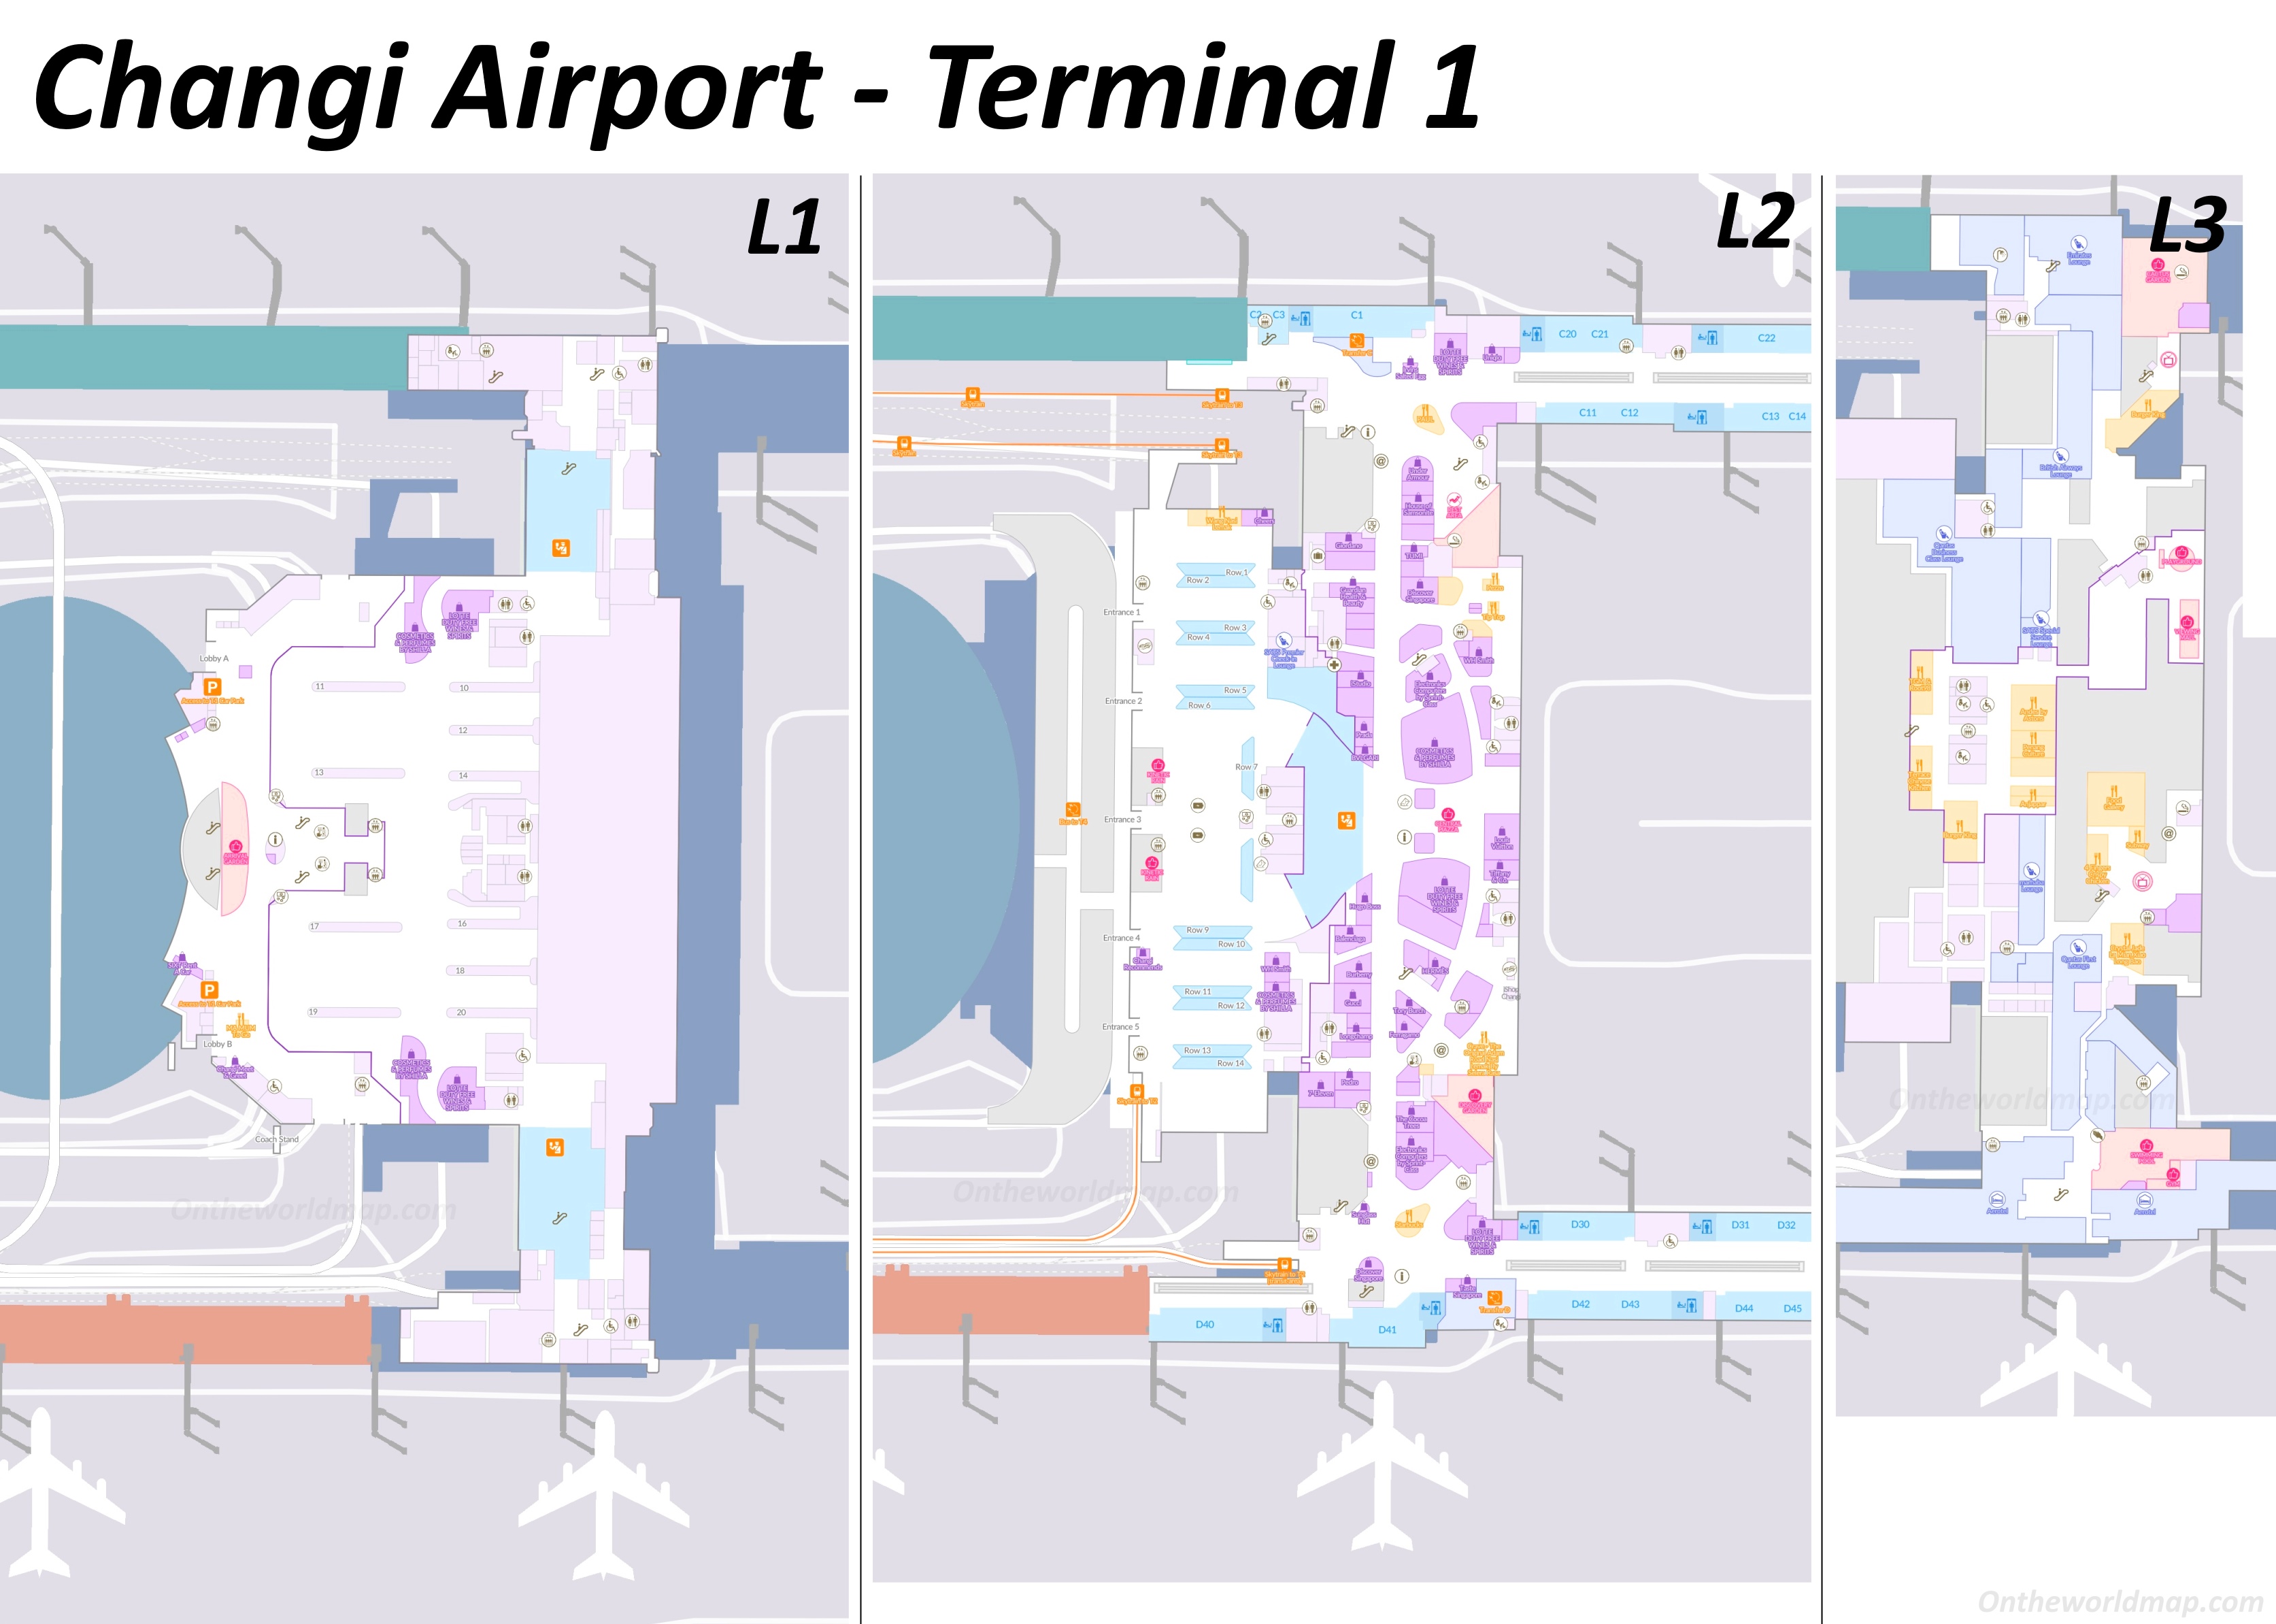 Changi Airport Terminal 1 Map | Singapore - Ontheworldmap.com